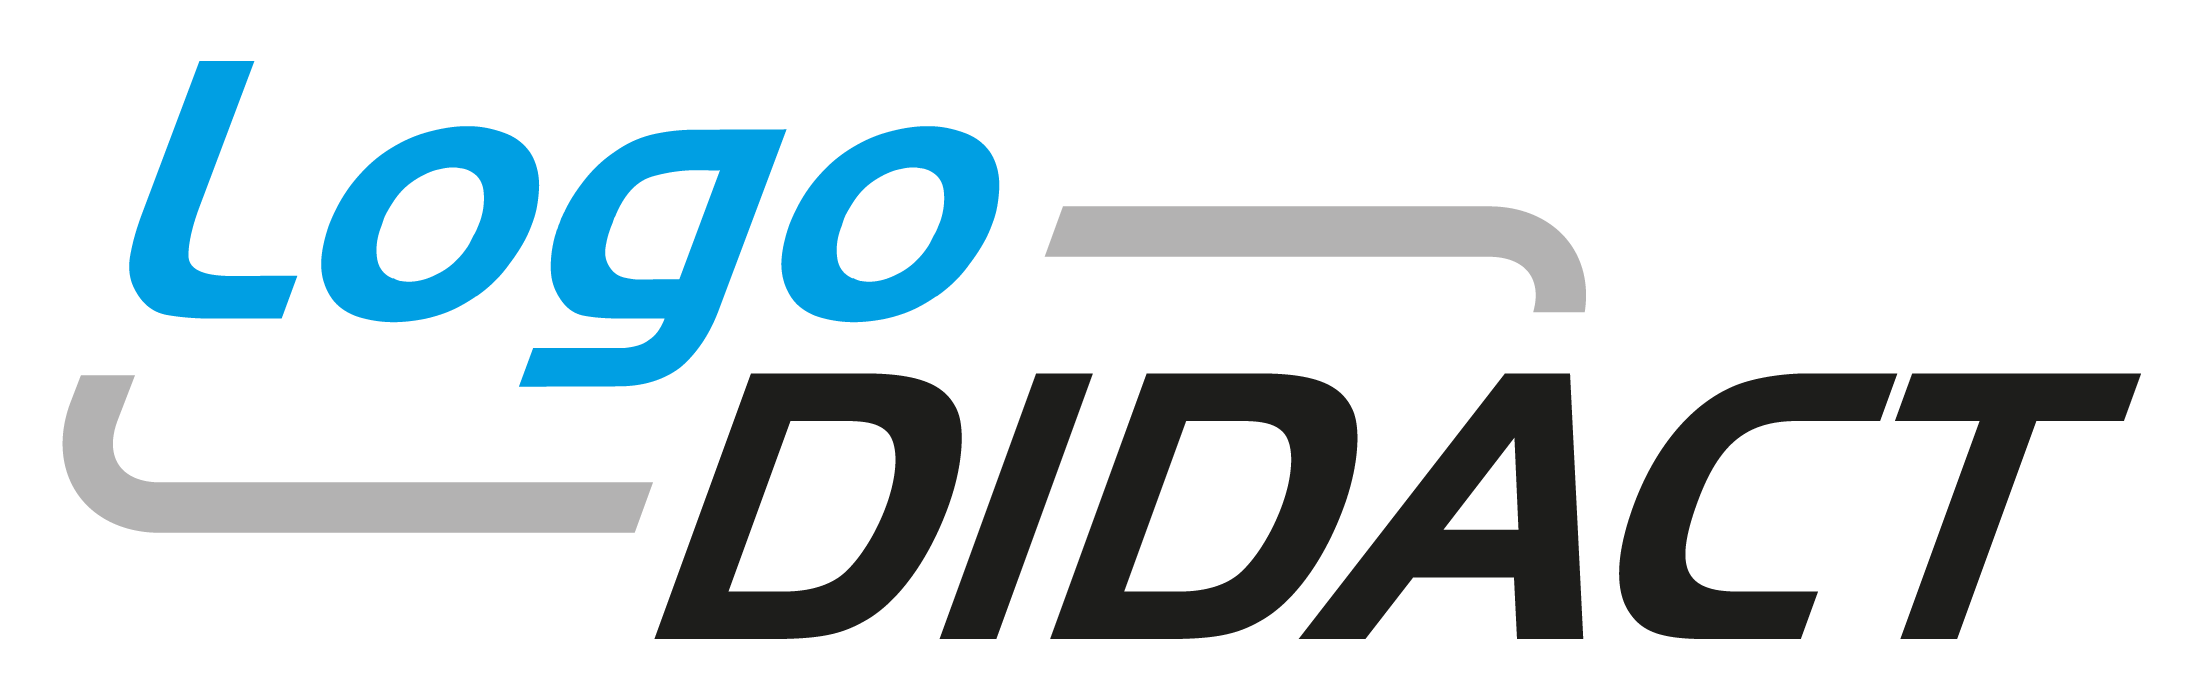 LogoDIDACT